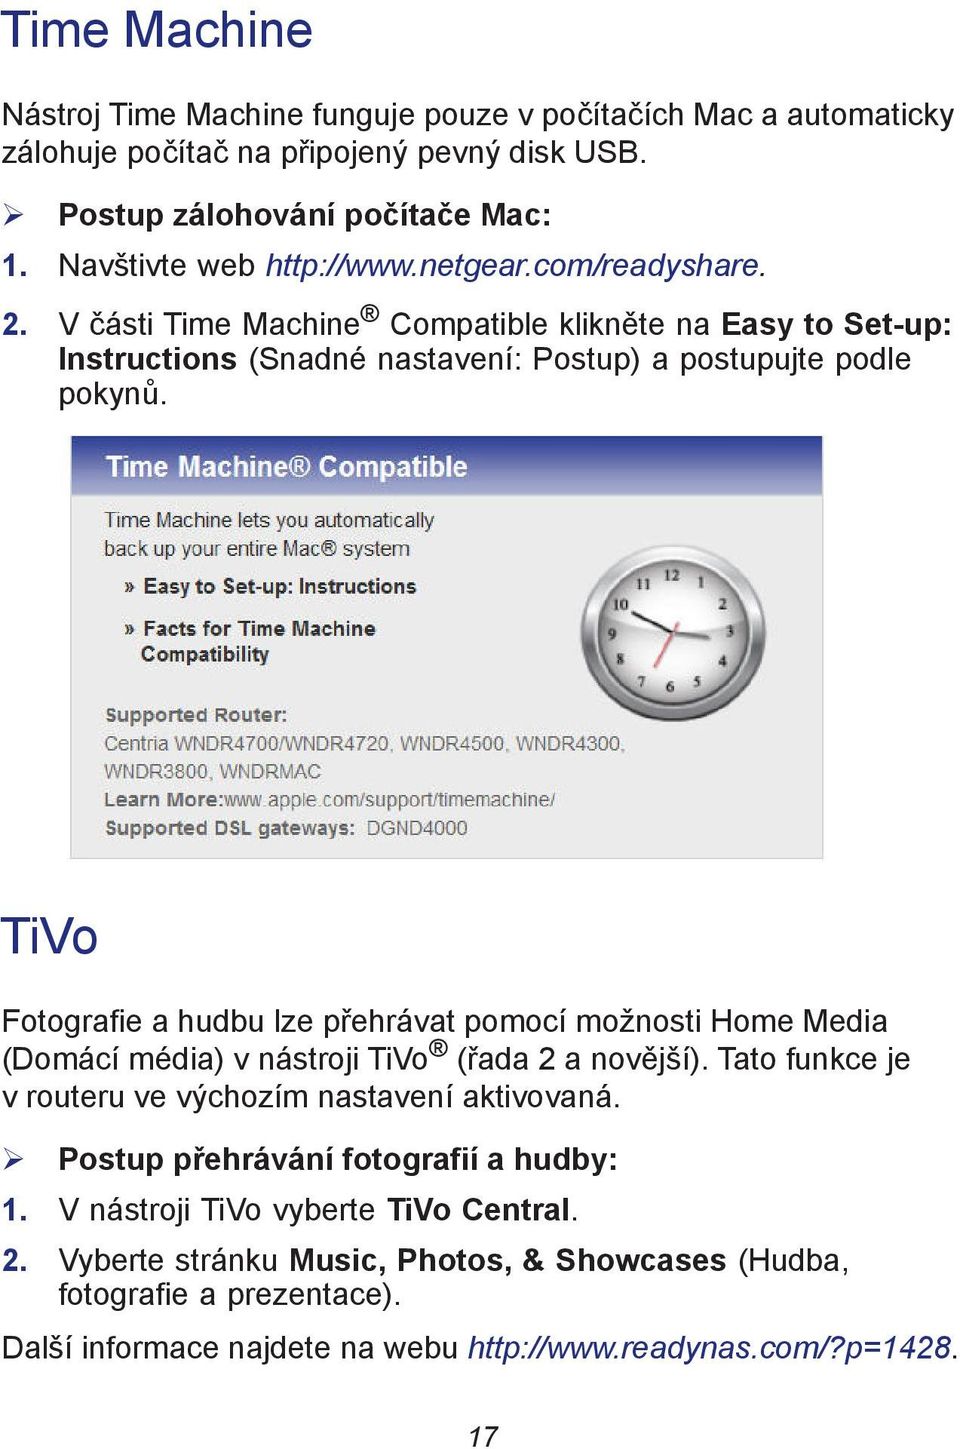 TiVo Fotografie a hudbu lze přehrávat pomocí možnosti Home Media (Domácí média) v nástroji TiVo (řada 2 a novější). Tato funkce je v routeru ve výchozím nastavení aktivovaná.